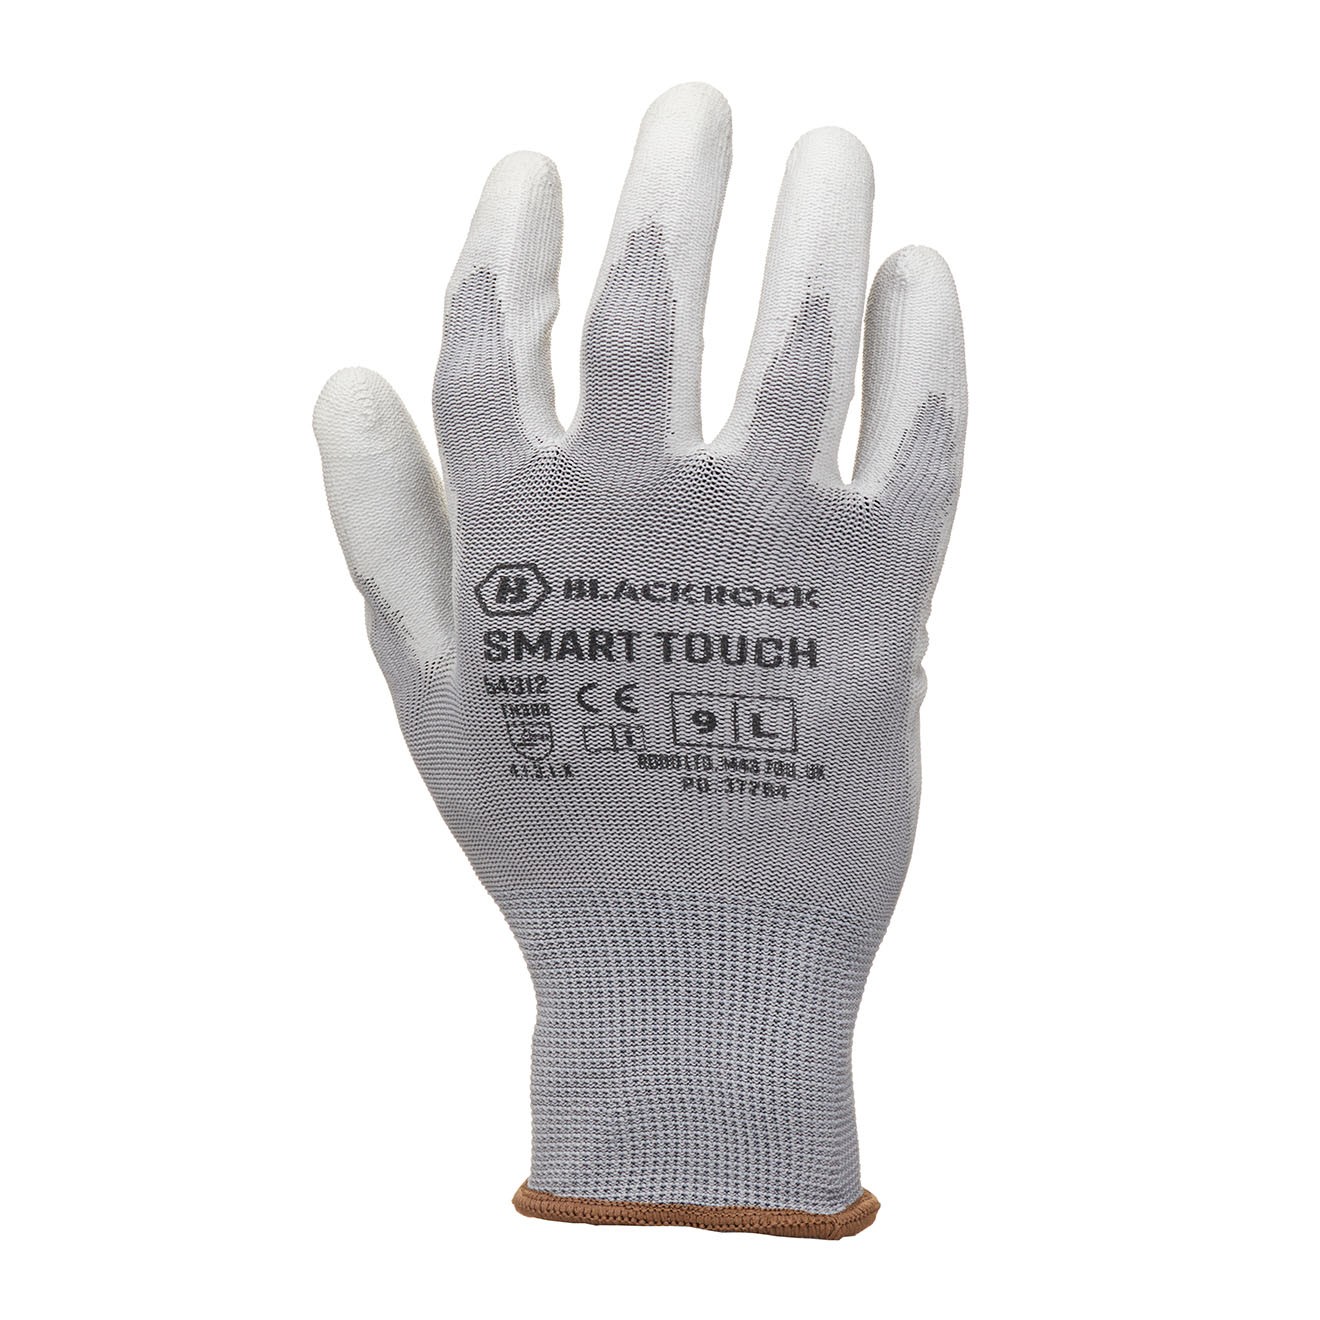 Smart Touch Work Glove